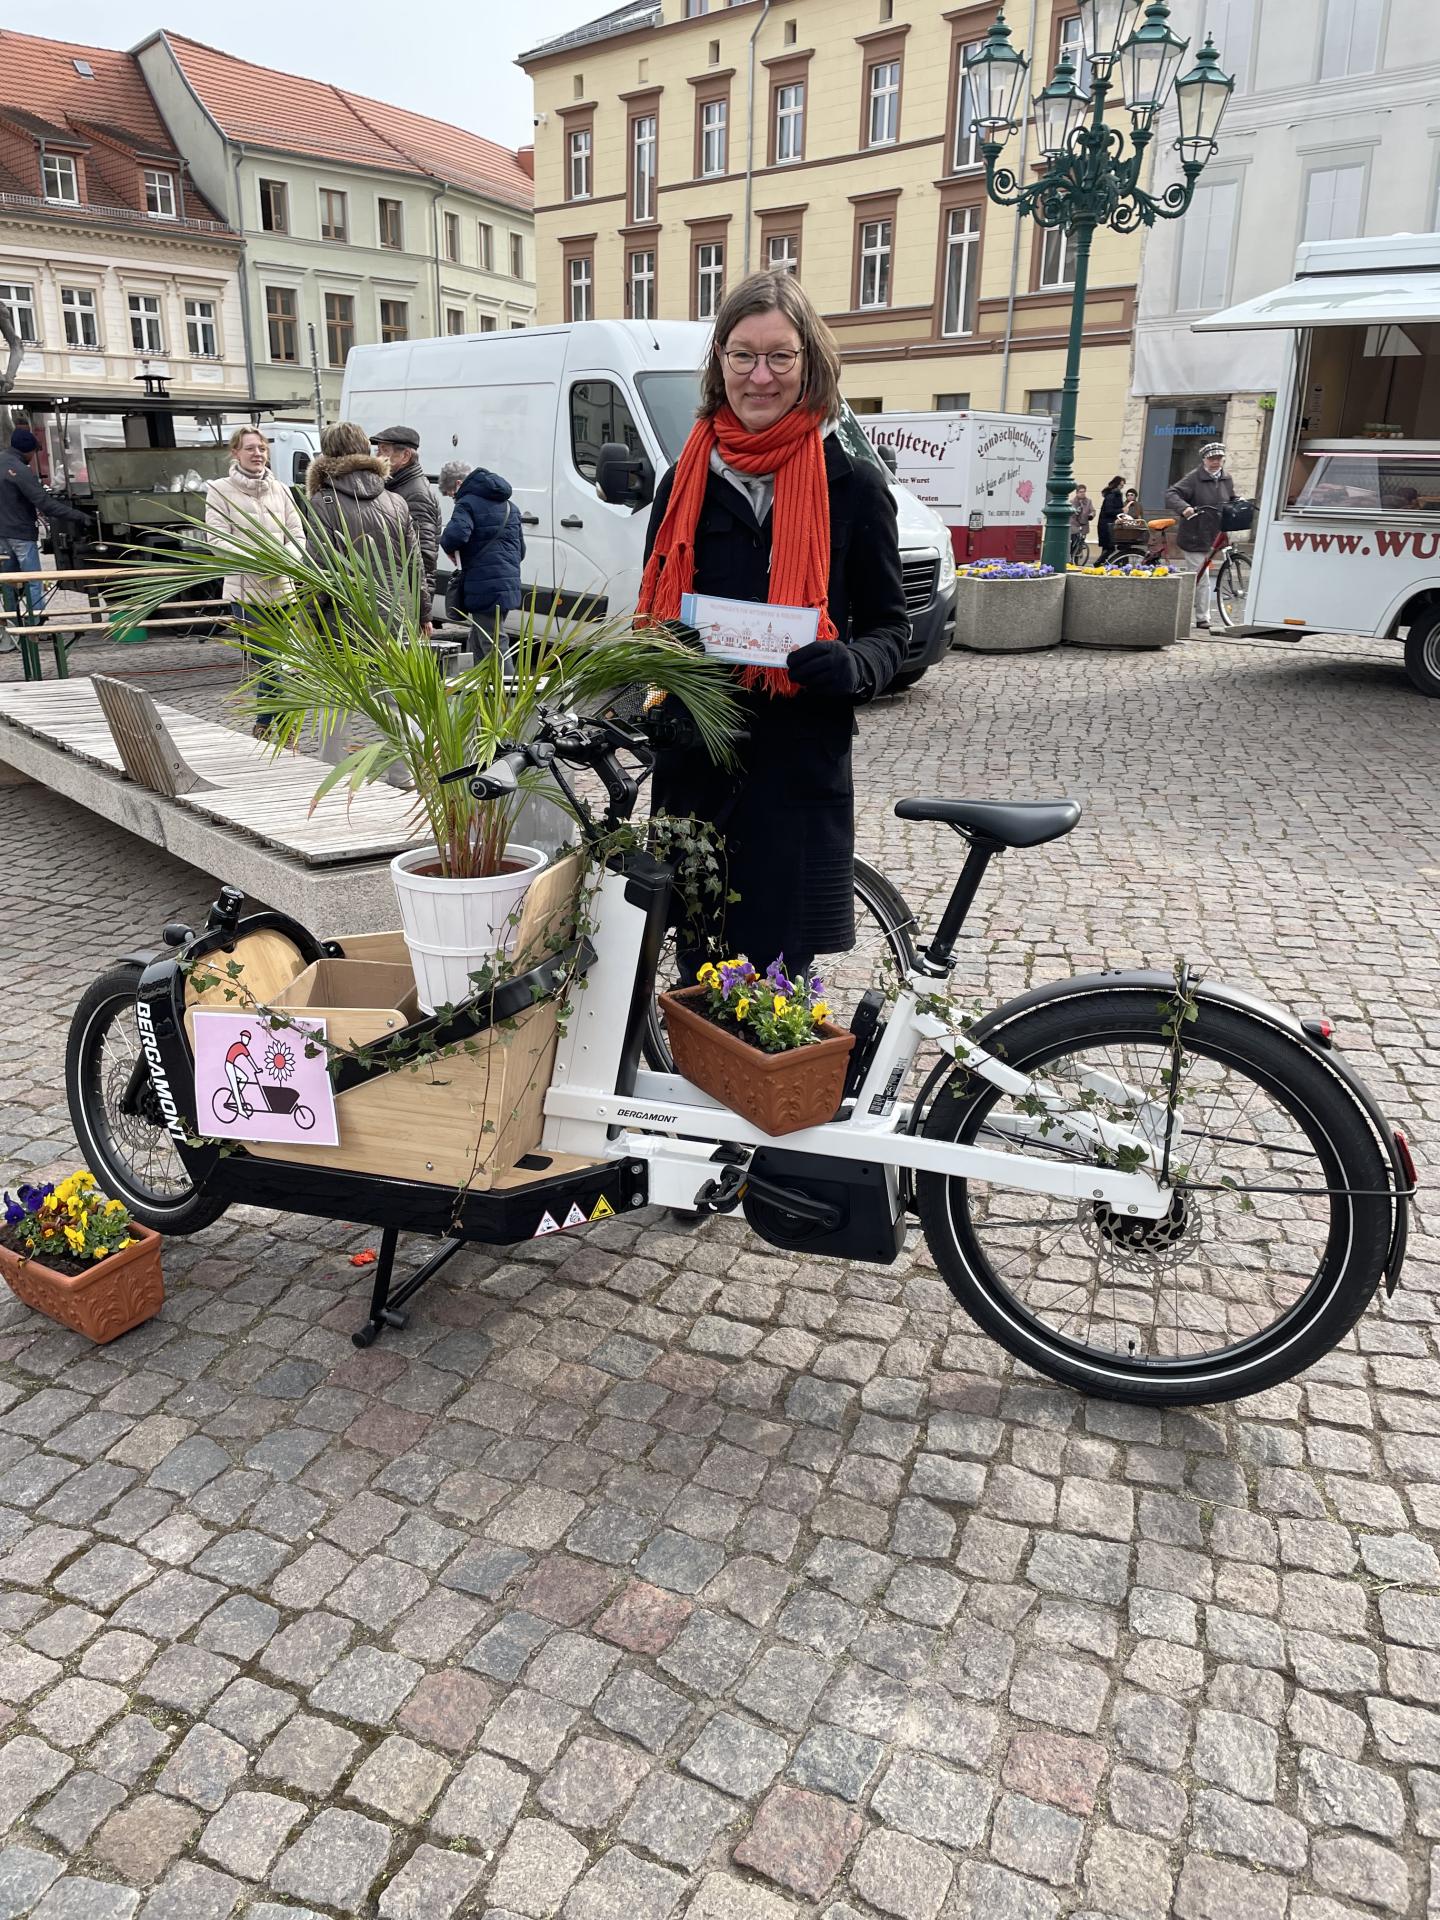 Katja Lais vom TGZ Prignitz strelltte auf dem Perleberger Wochenmarkt das Projekt "Wir machen Prignitz" vor